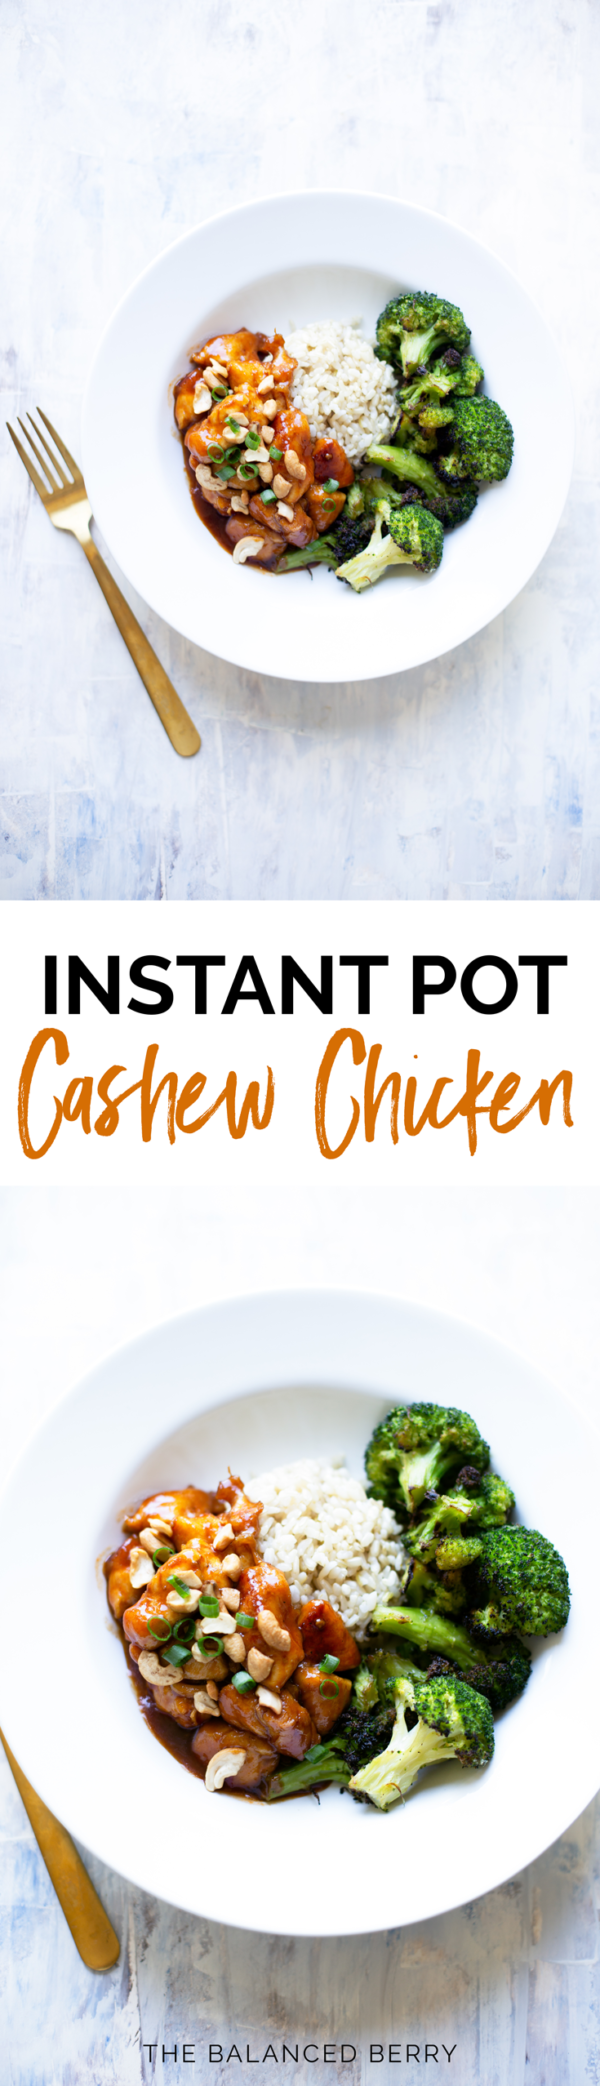 instant pot ground pork cashew recipes